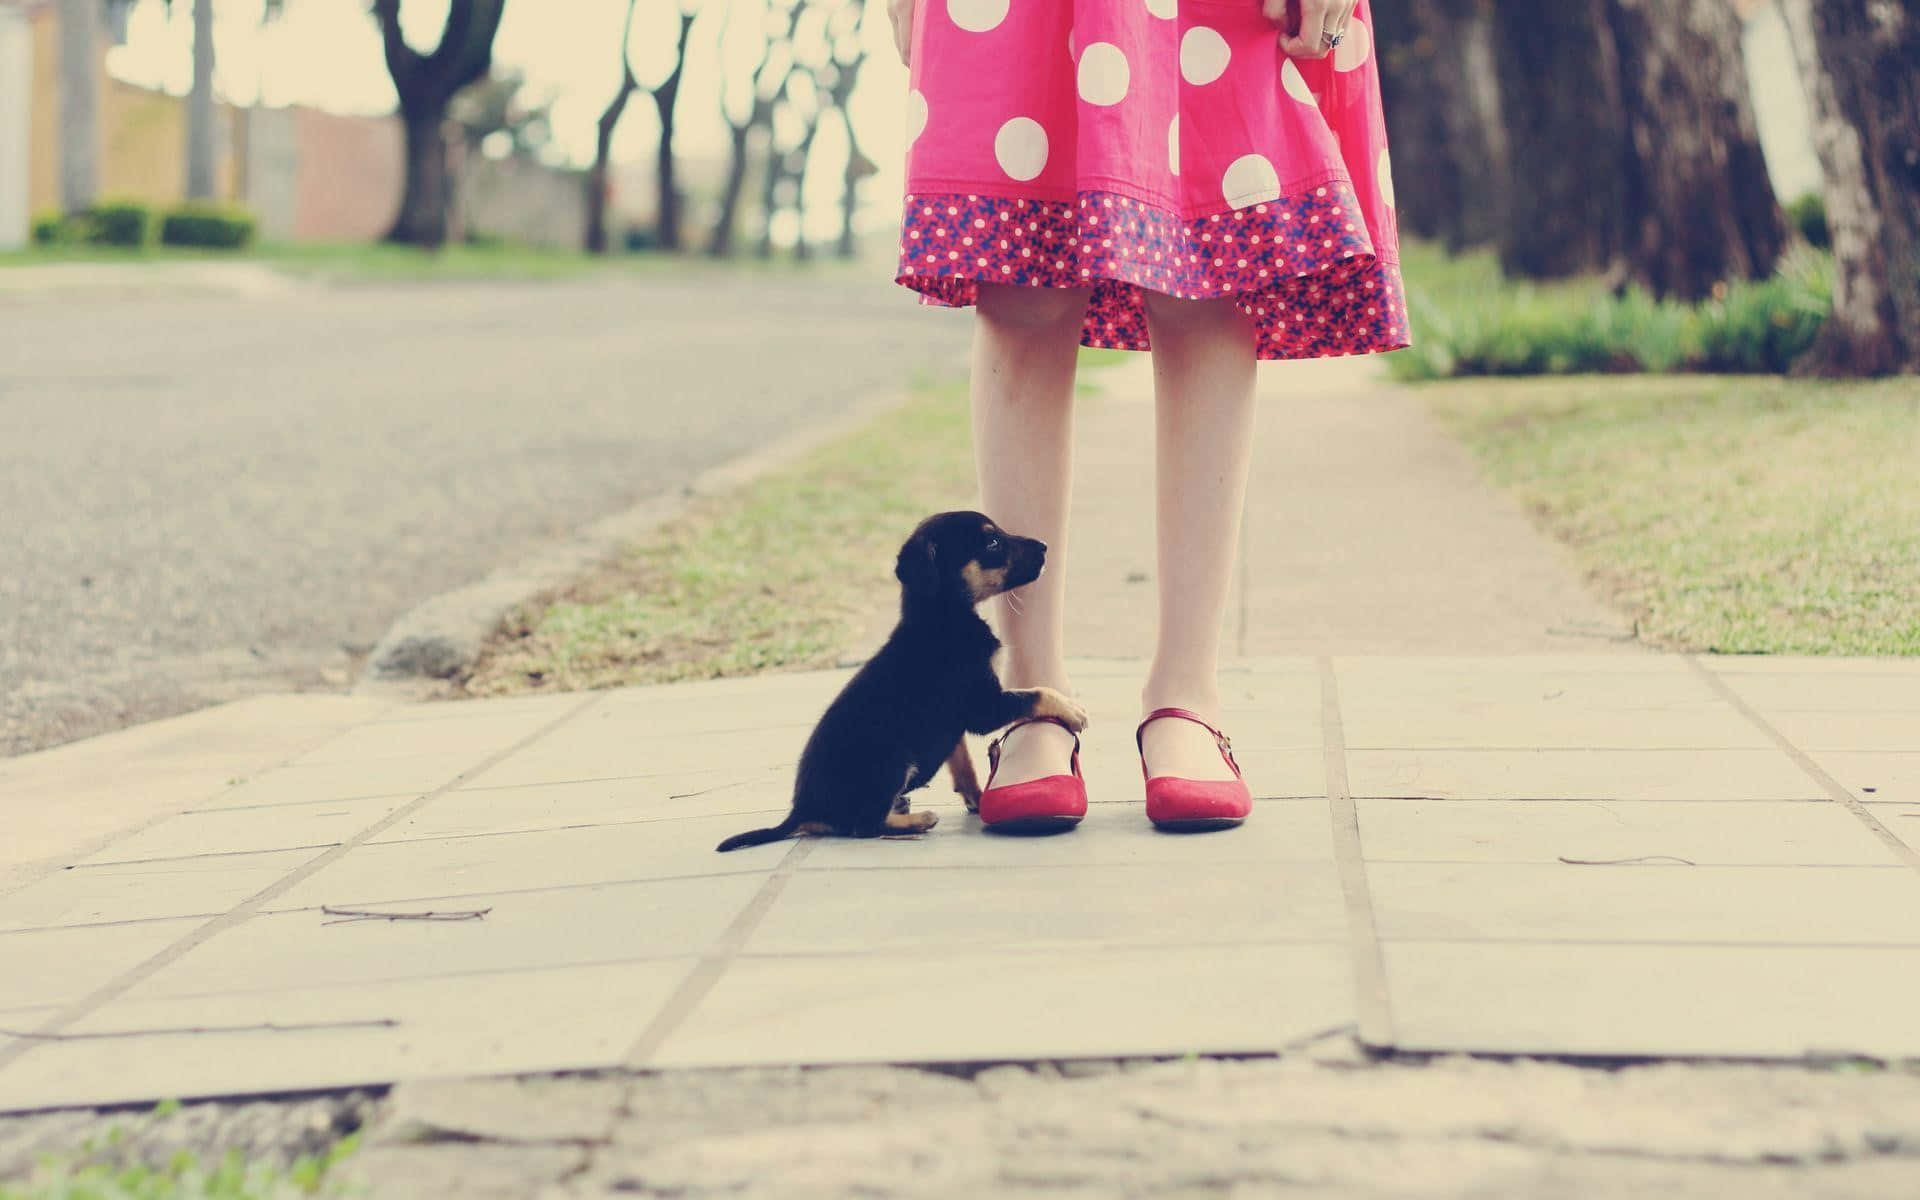 Girlin Polka Dot Dressand Puppyon Pathway.jpg Background